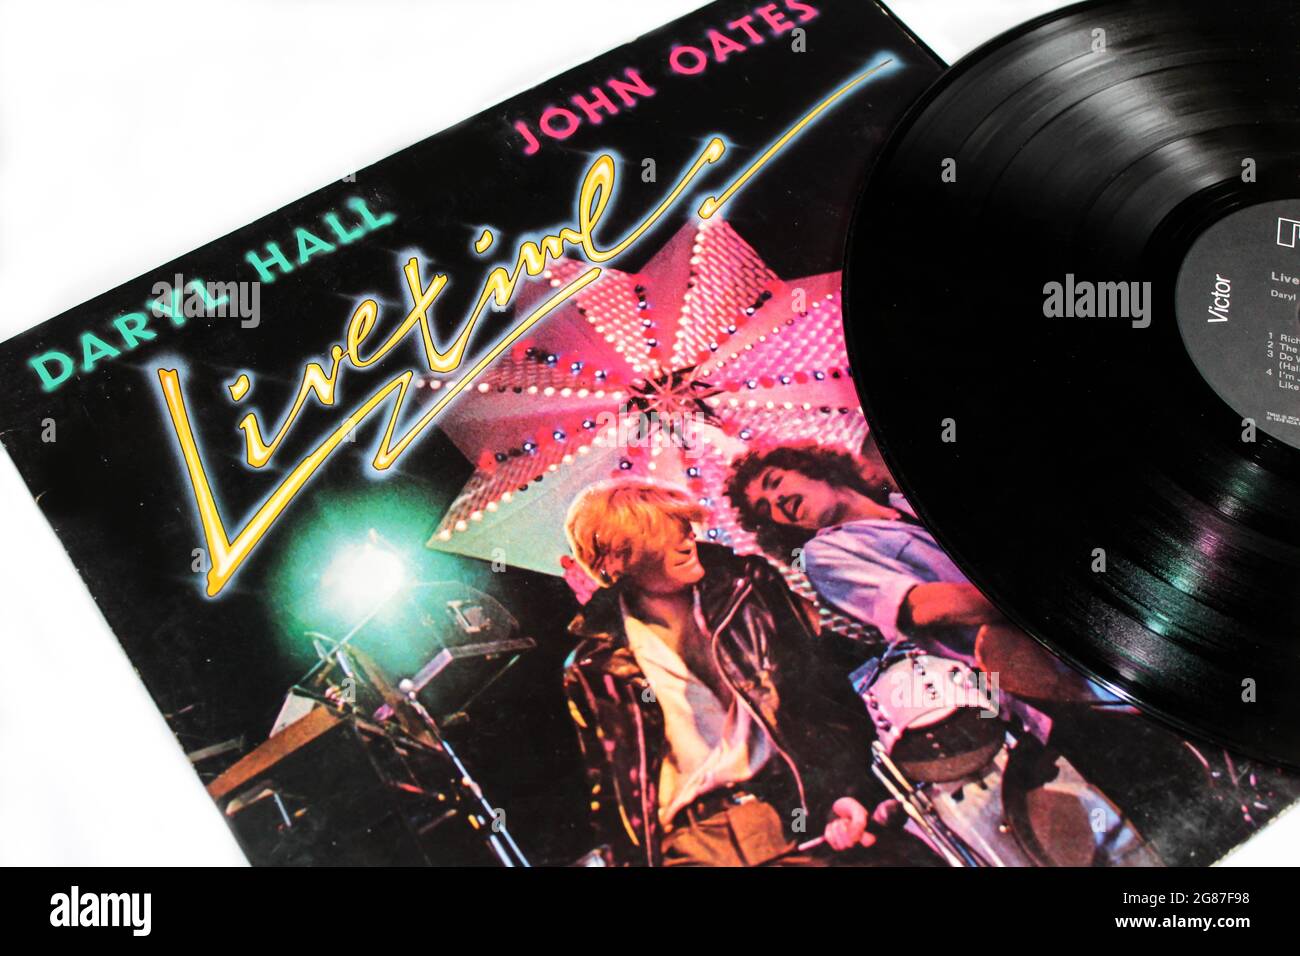 Pop- und Dance-Rockband, Hall and Oats-Musikalbum auf Vinyl-Schallplatte. Titel: Livetime Album Cover Stockfoto